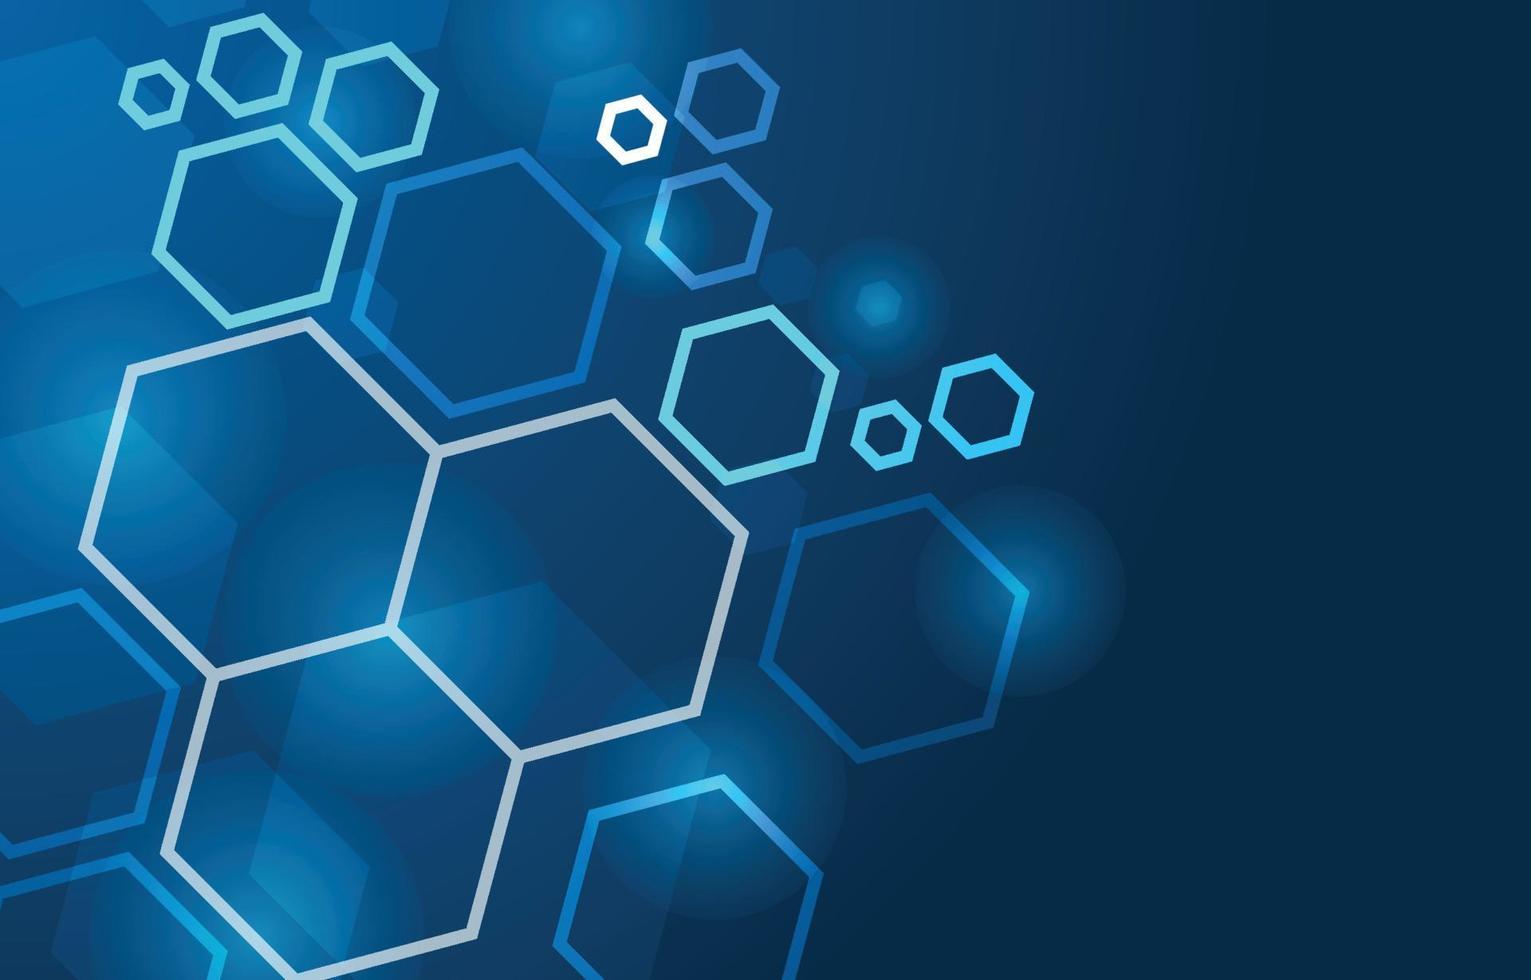 hexagon technologie met donkerblauwe achtergrond. abstracte futuristische illustratie vector ontwerp high-tech digitale sociale netwerk verbinding concept.